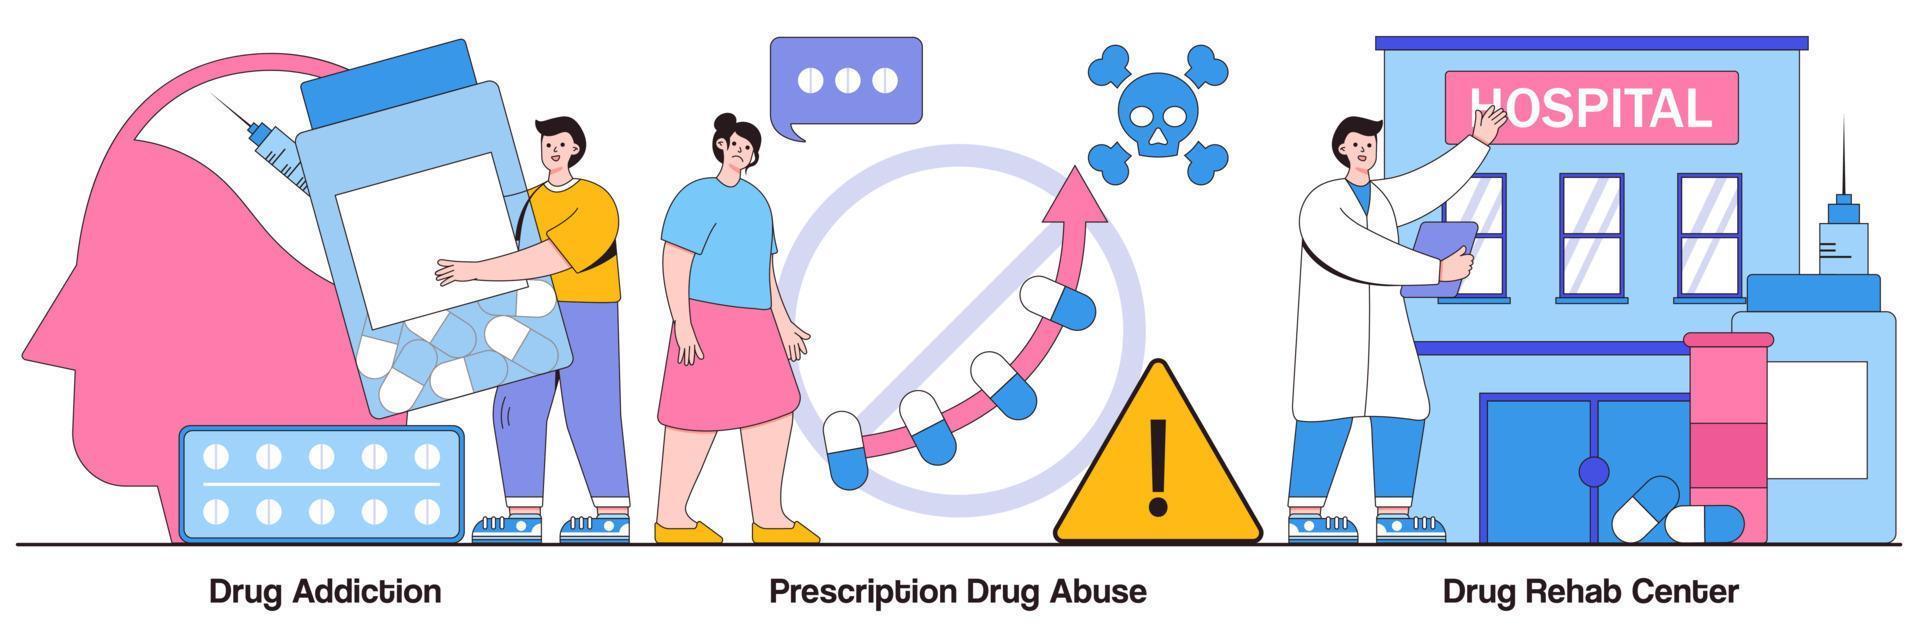 drugsverslaving en rehabilitatiecentrum, medicijnmisbruik op recept geïllustreerd pakket vector